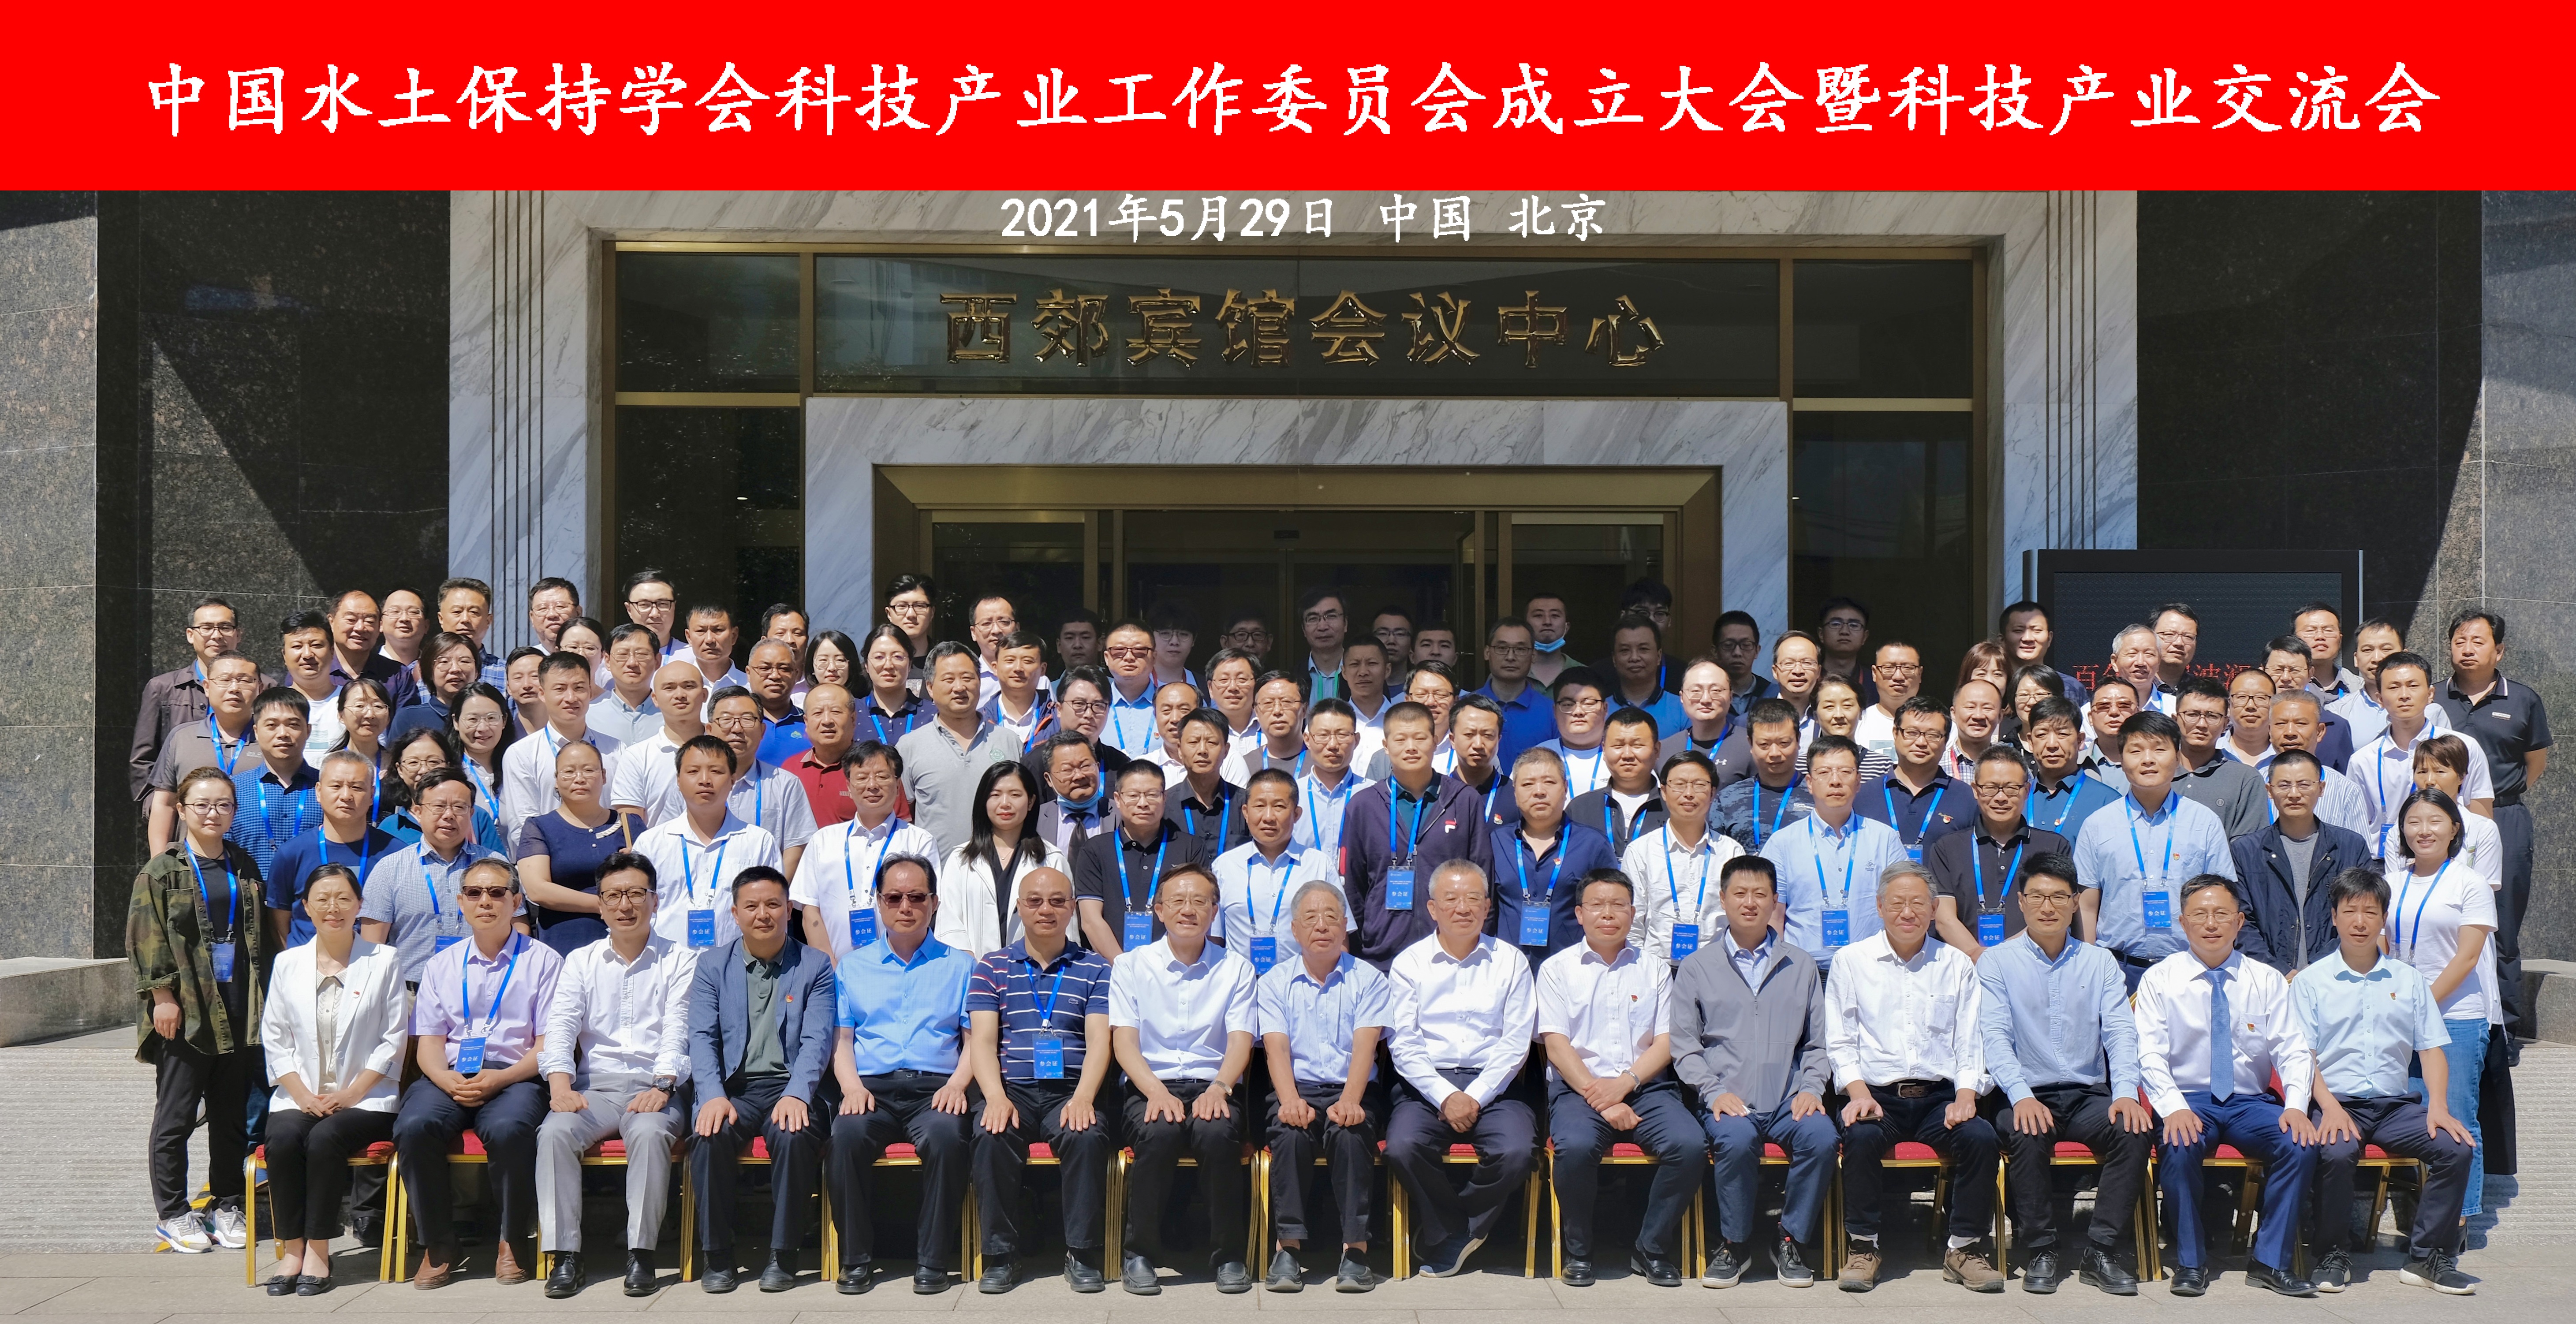 热烈祝贺中国水土保持学会科技产业工作委员会成立大会（暨科技产业交流会）在京召开并取得圆满成功